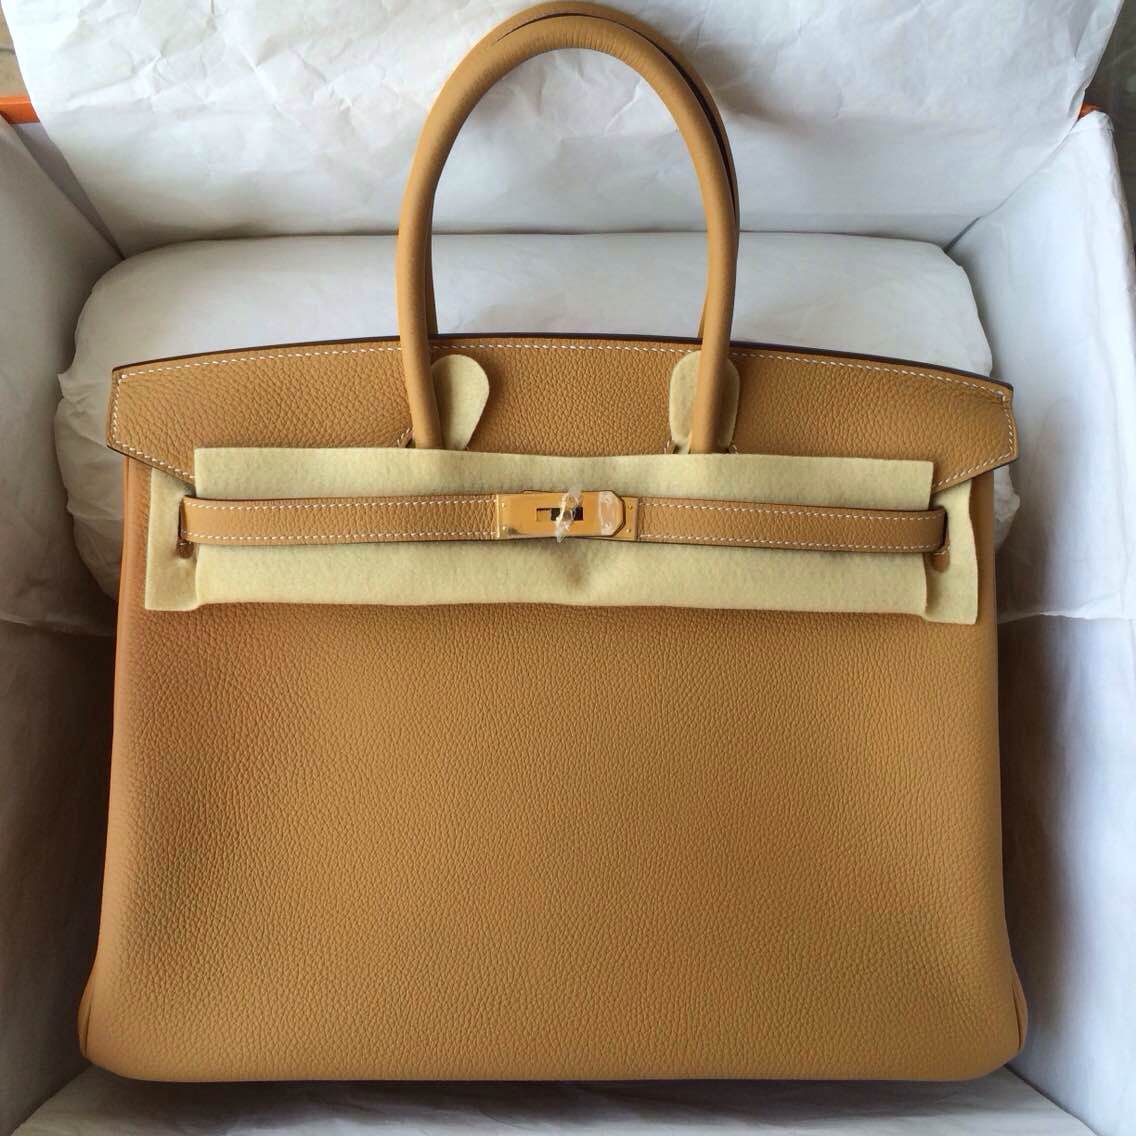 35cm Hermes Birkin Bag Natural Color France Togo Leather Gold Hardware — Hermes Crocodile Birkin Bag